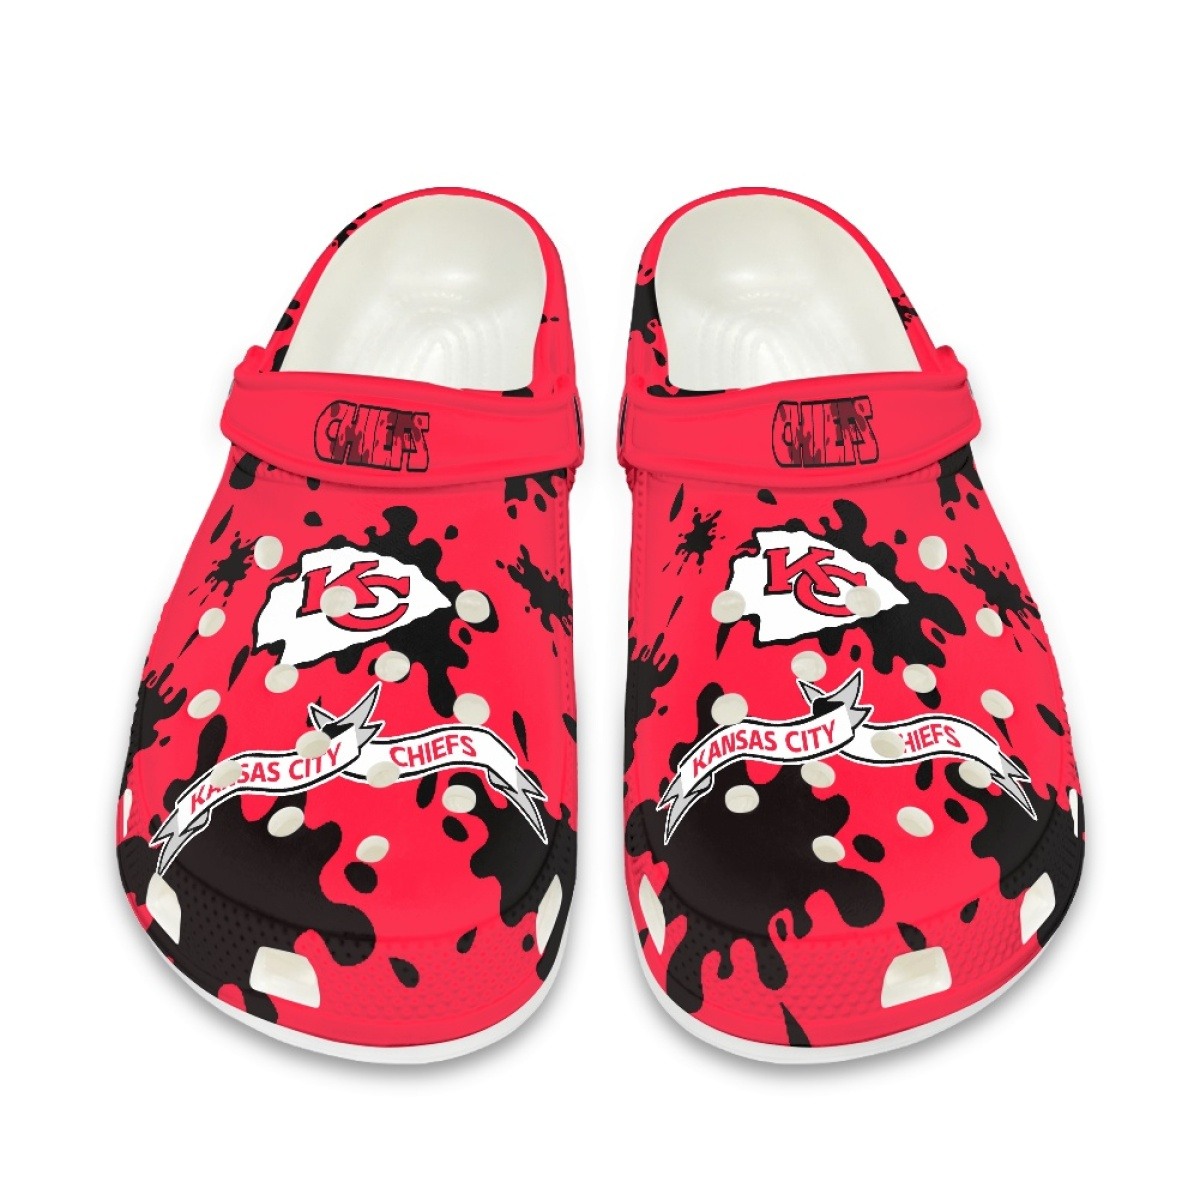 Kansas City Chiefs Crocs shoes cute Style#3 Shoes for fans -Jack sport shop